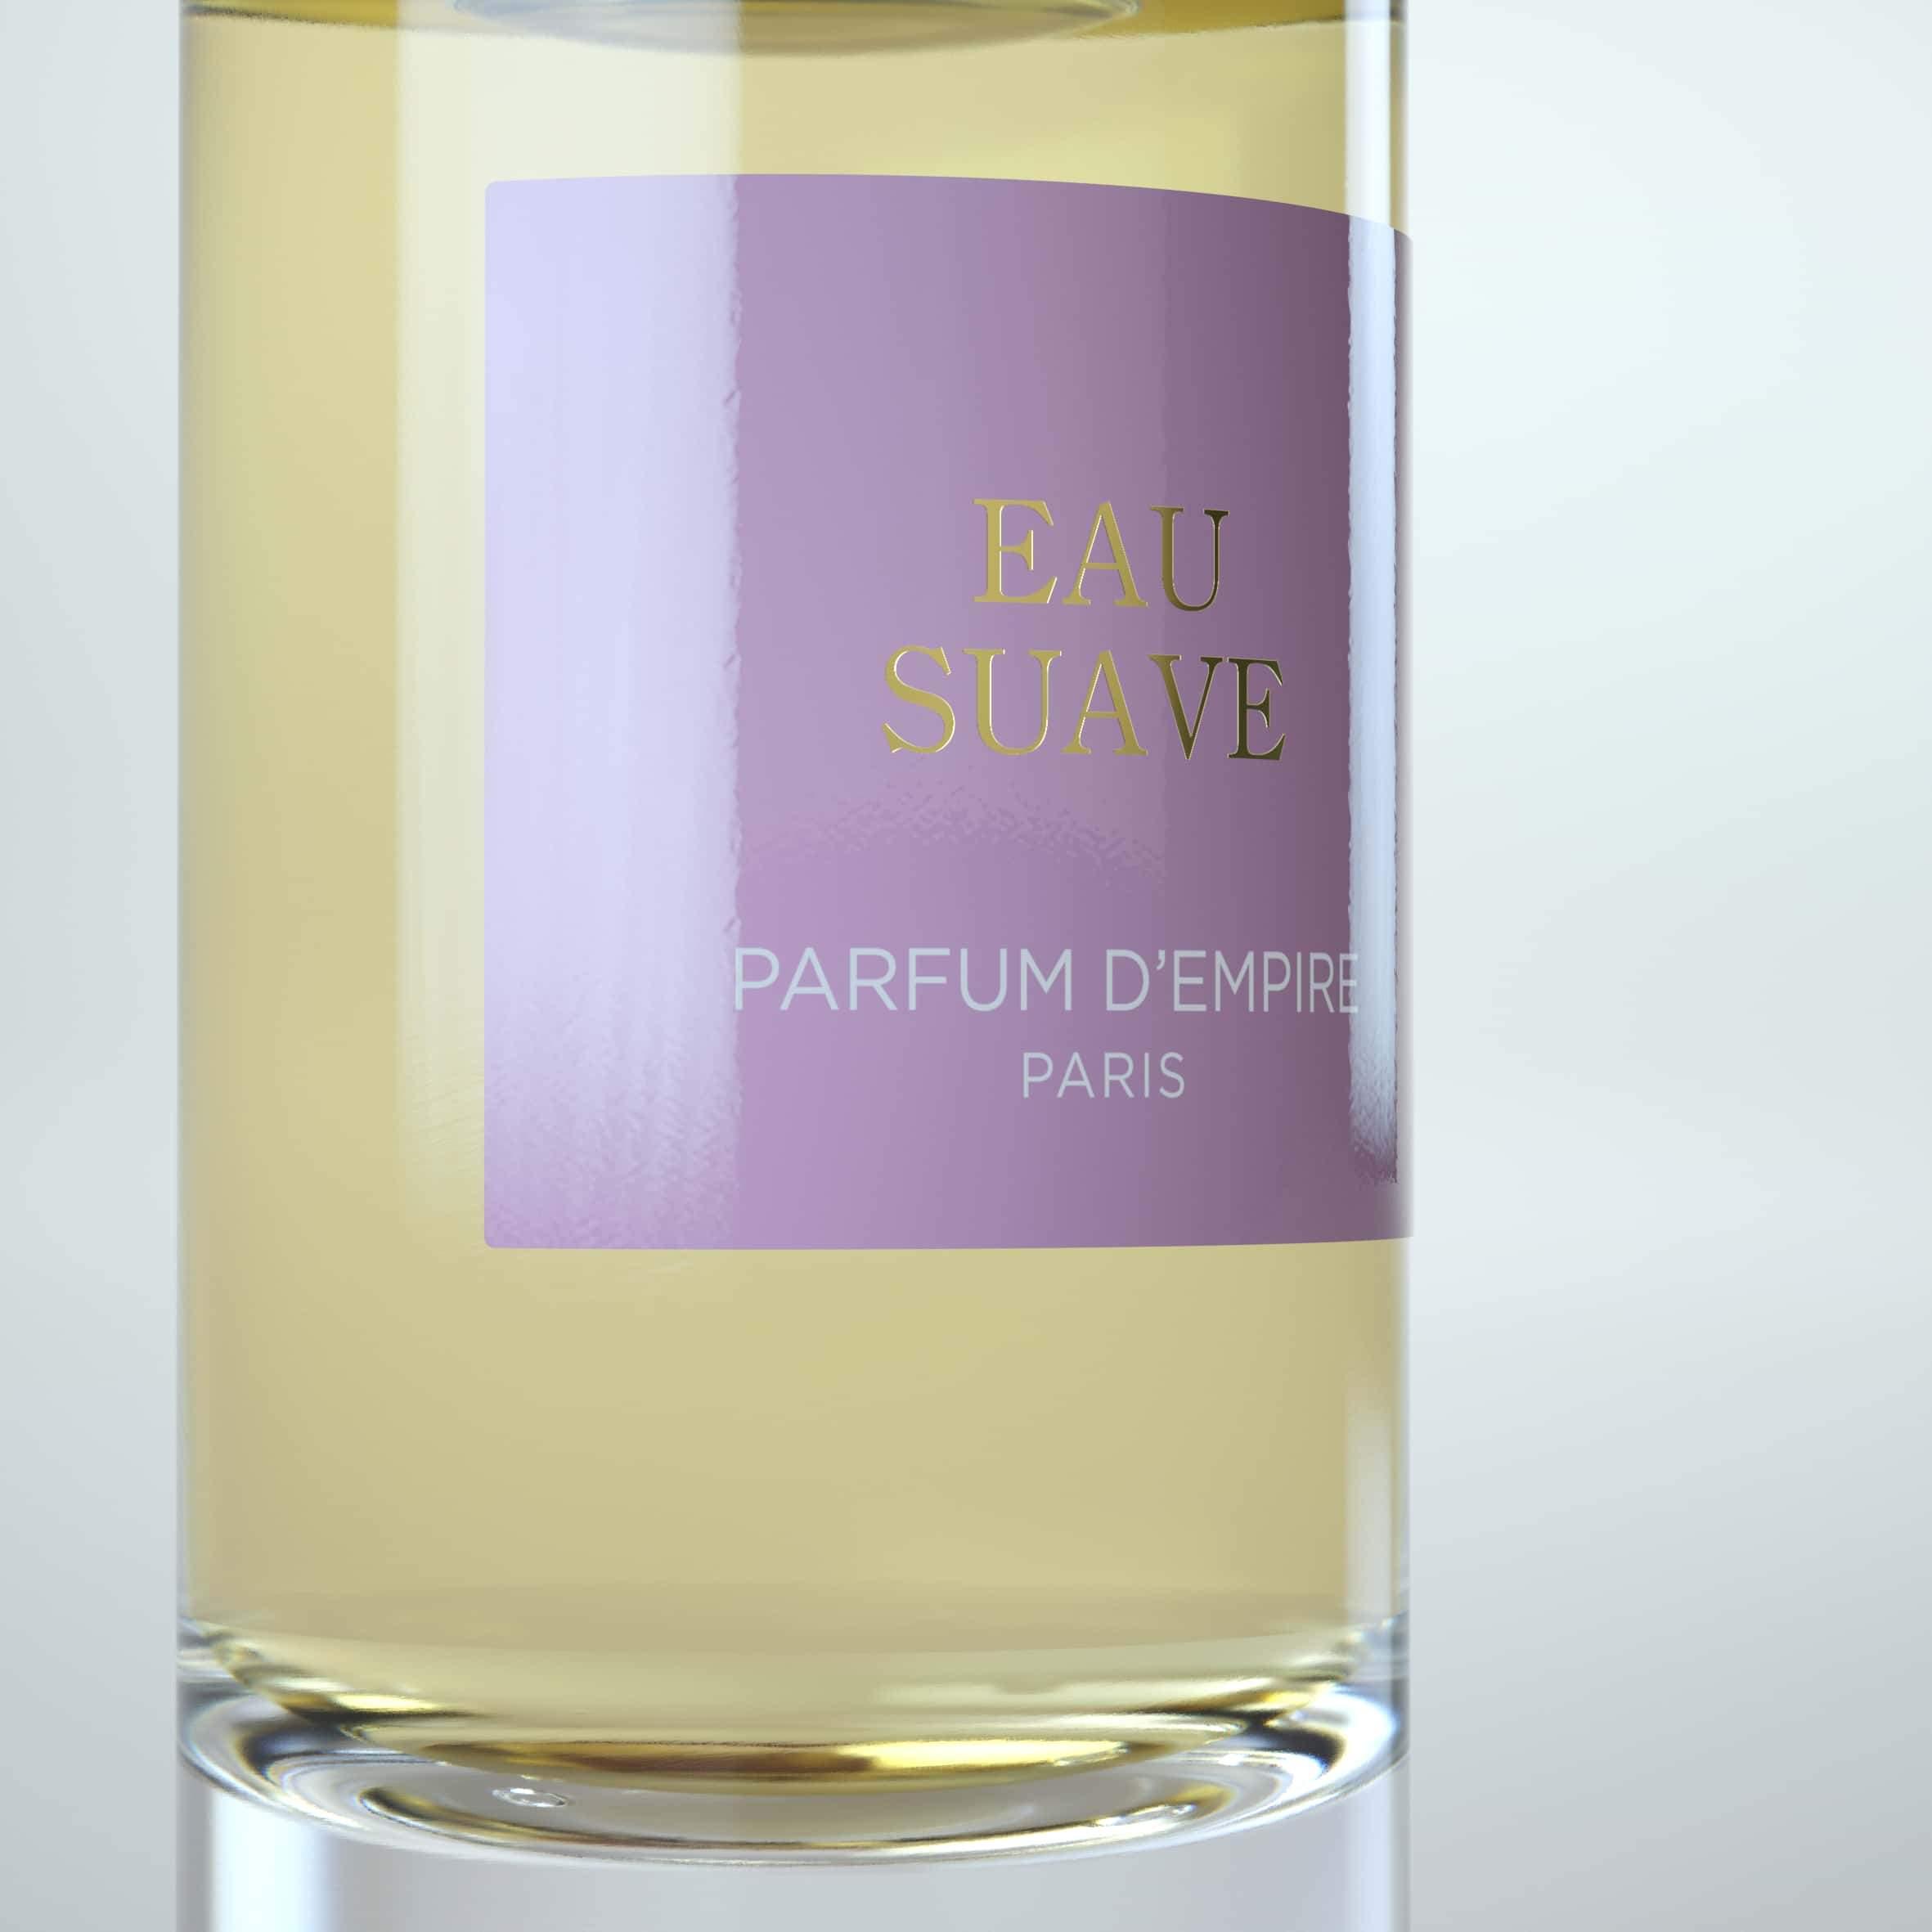 Parfum d'Empire - Eau Suave | Perfume Lounge